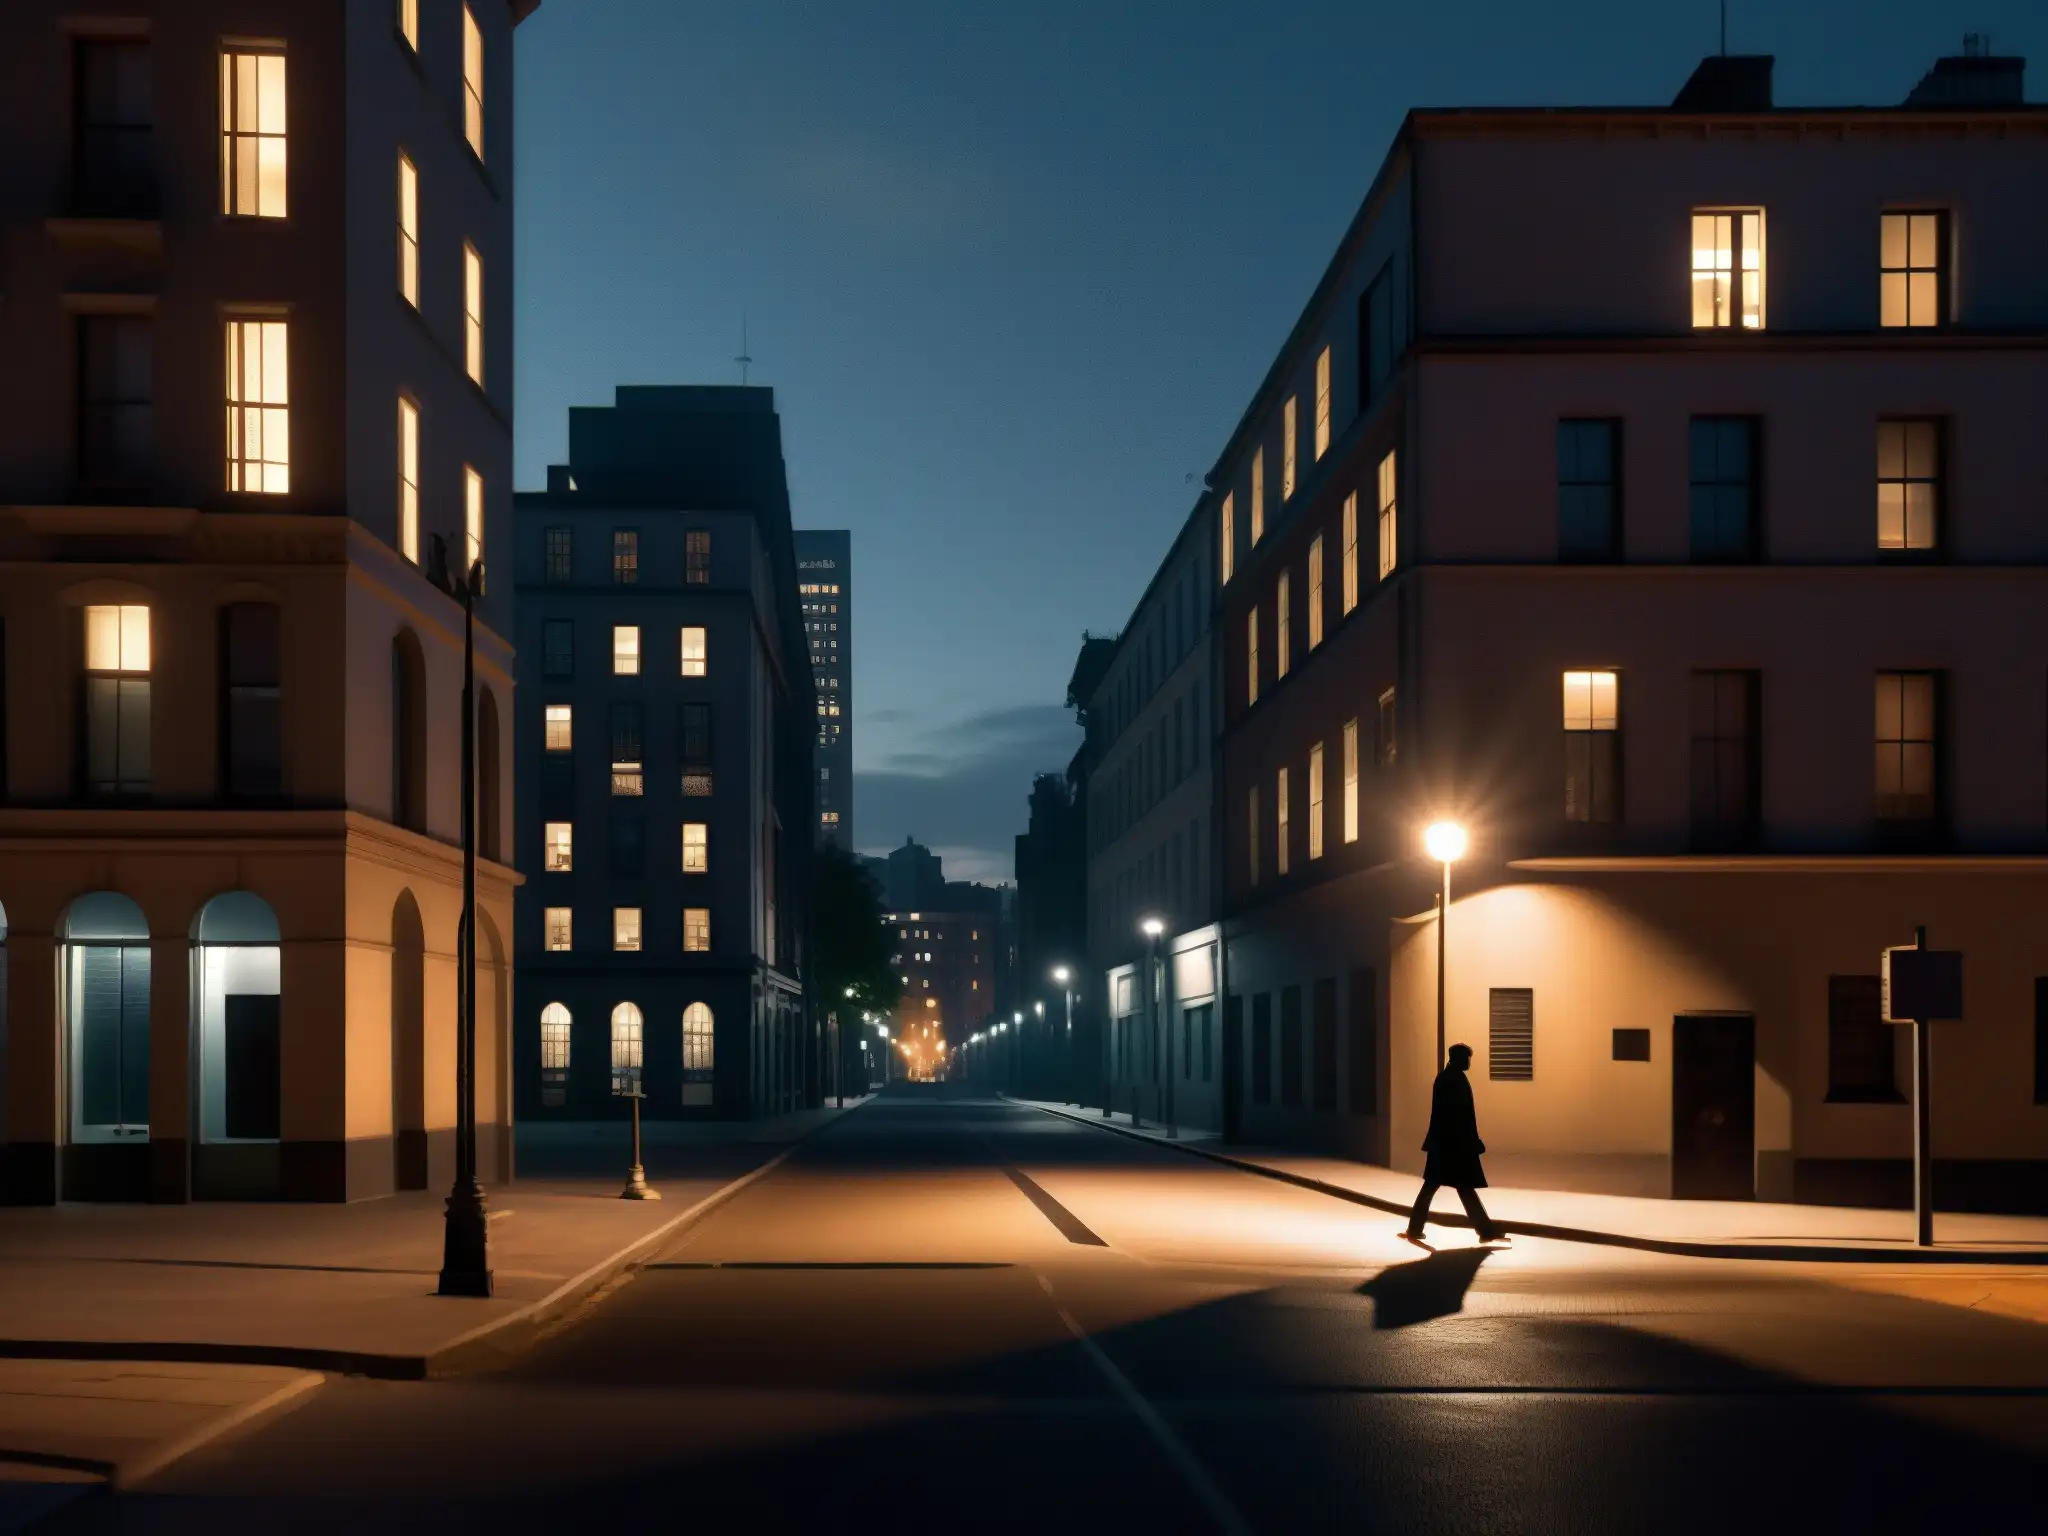 Una misteriosa noche en la ciudad con un solitario caminante bajo la luz de la calle